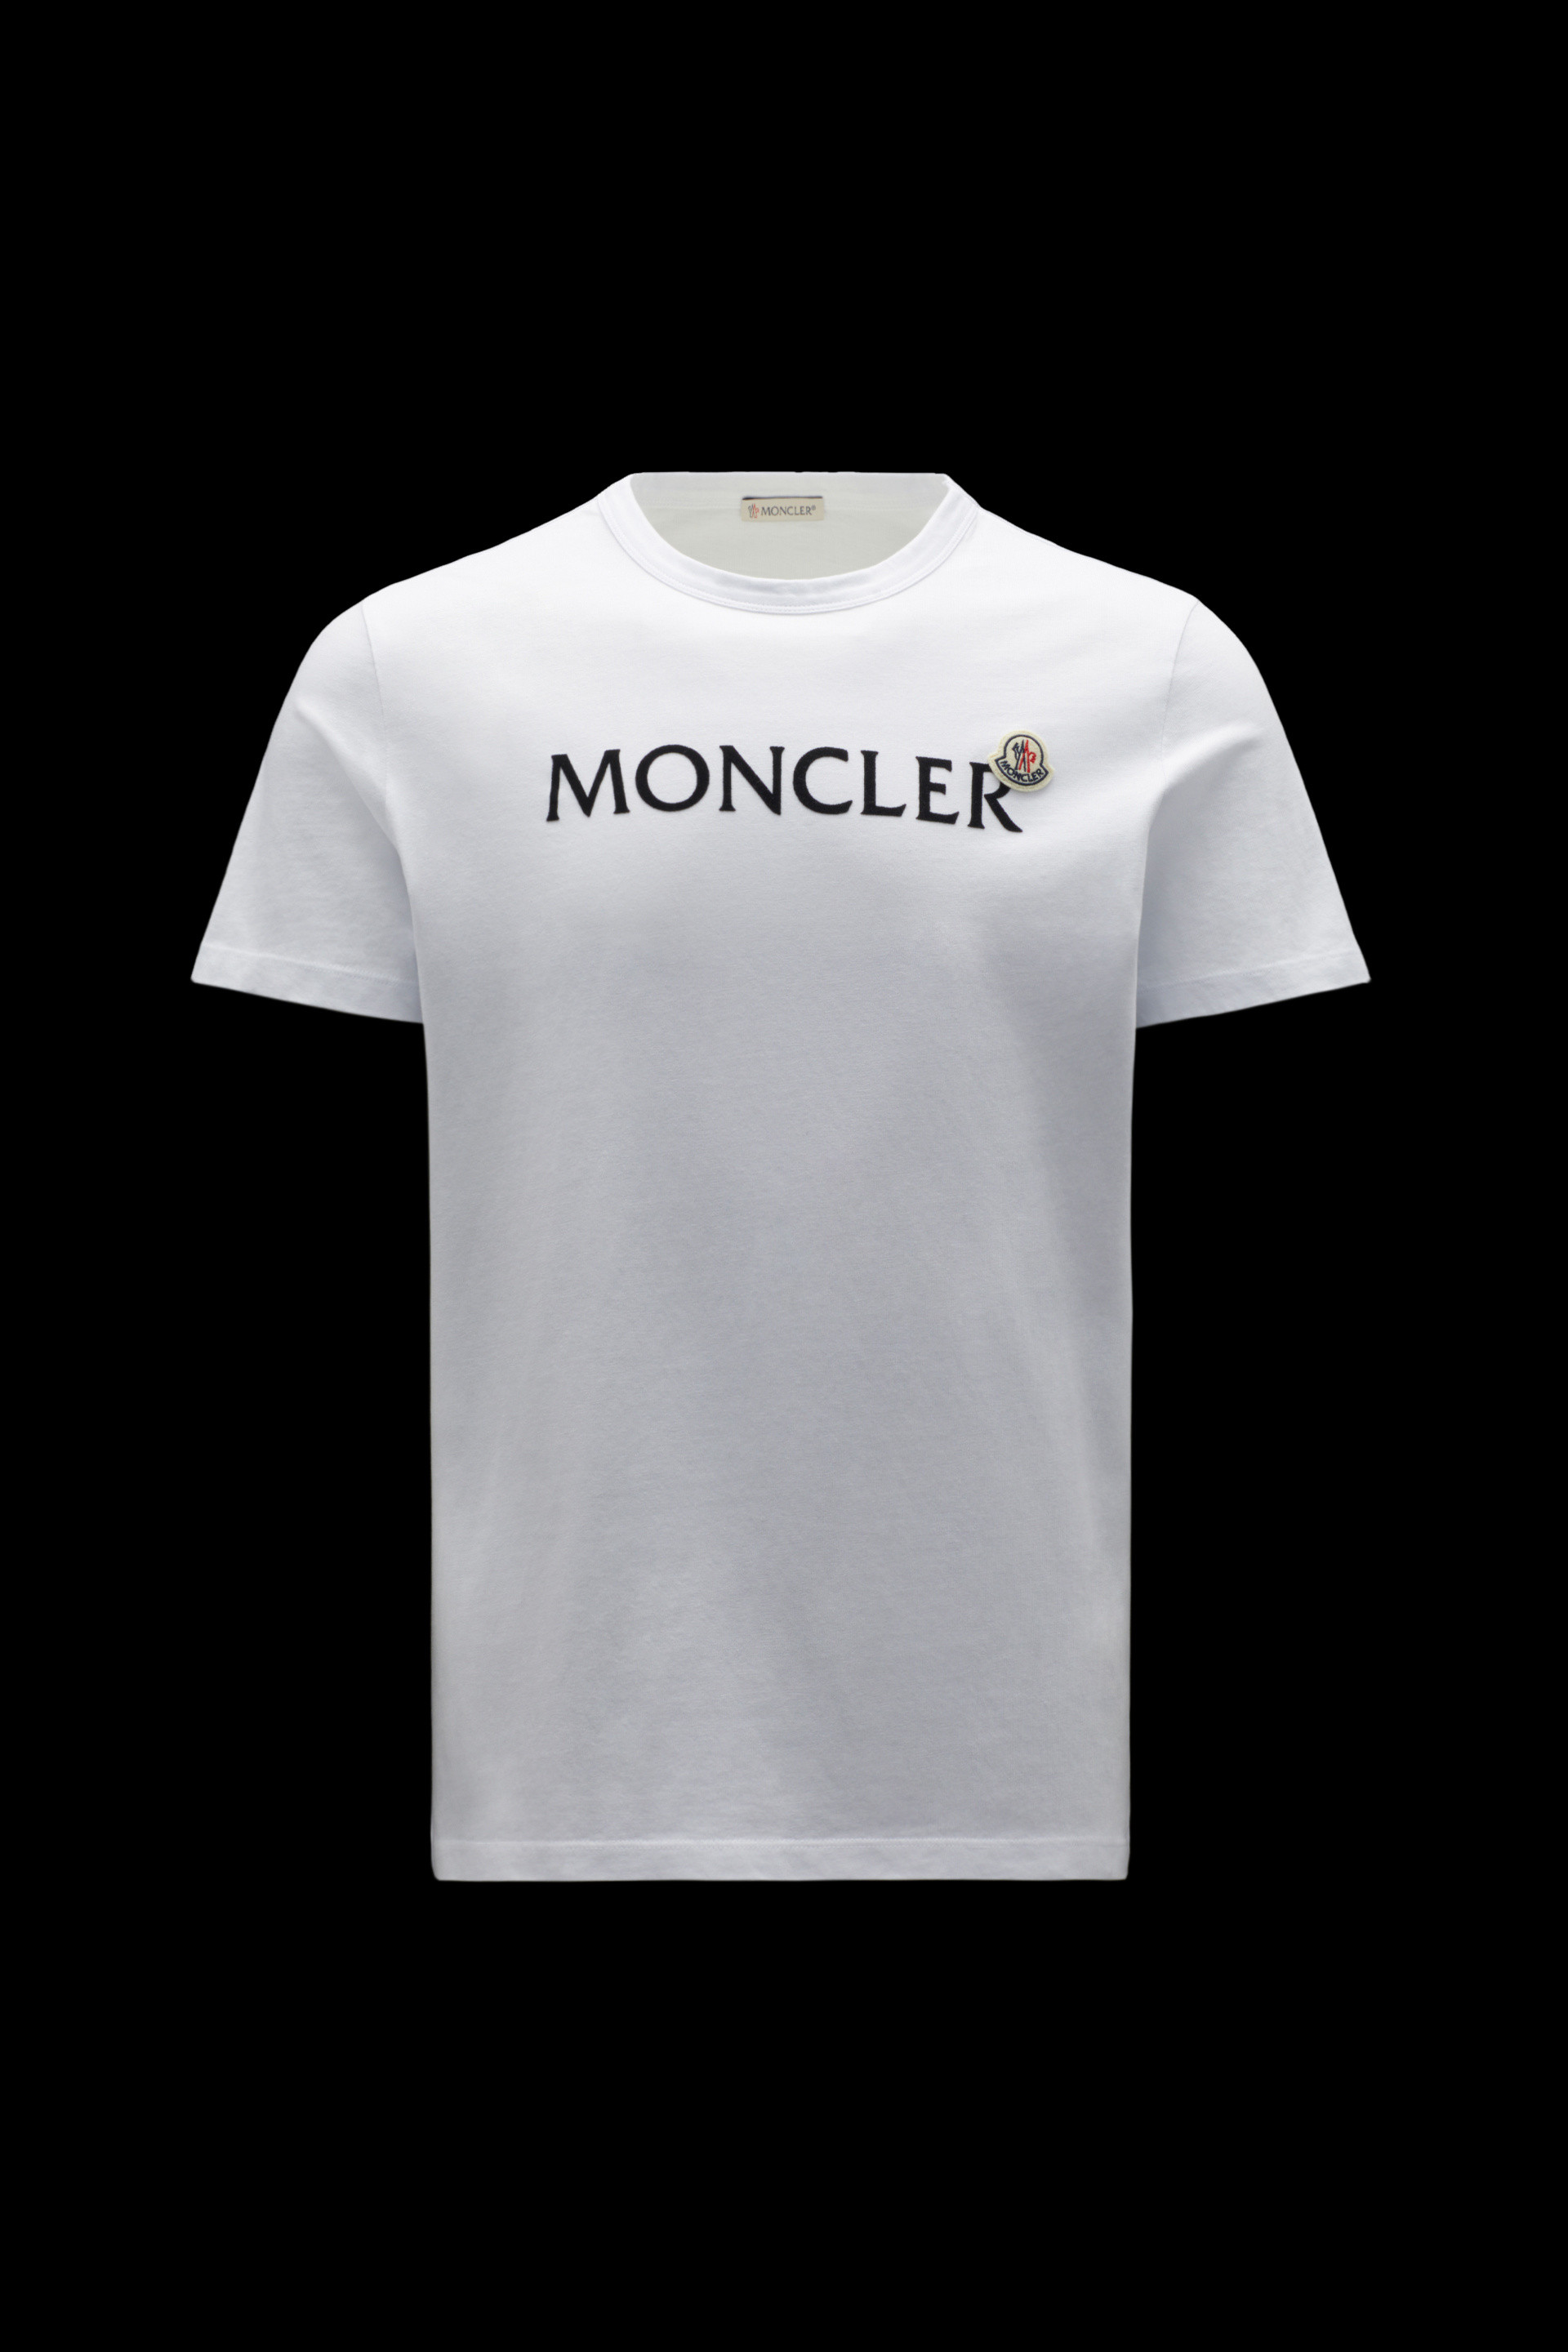 のモンクレ MONCLER モンクレール メンズ Tシャツの - めクリーニ